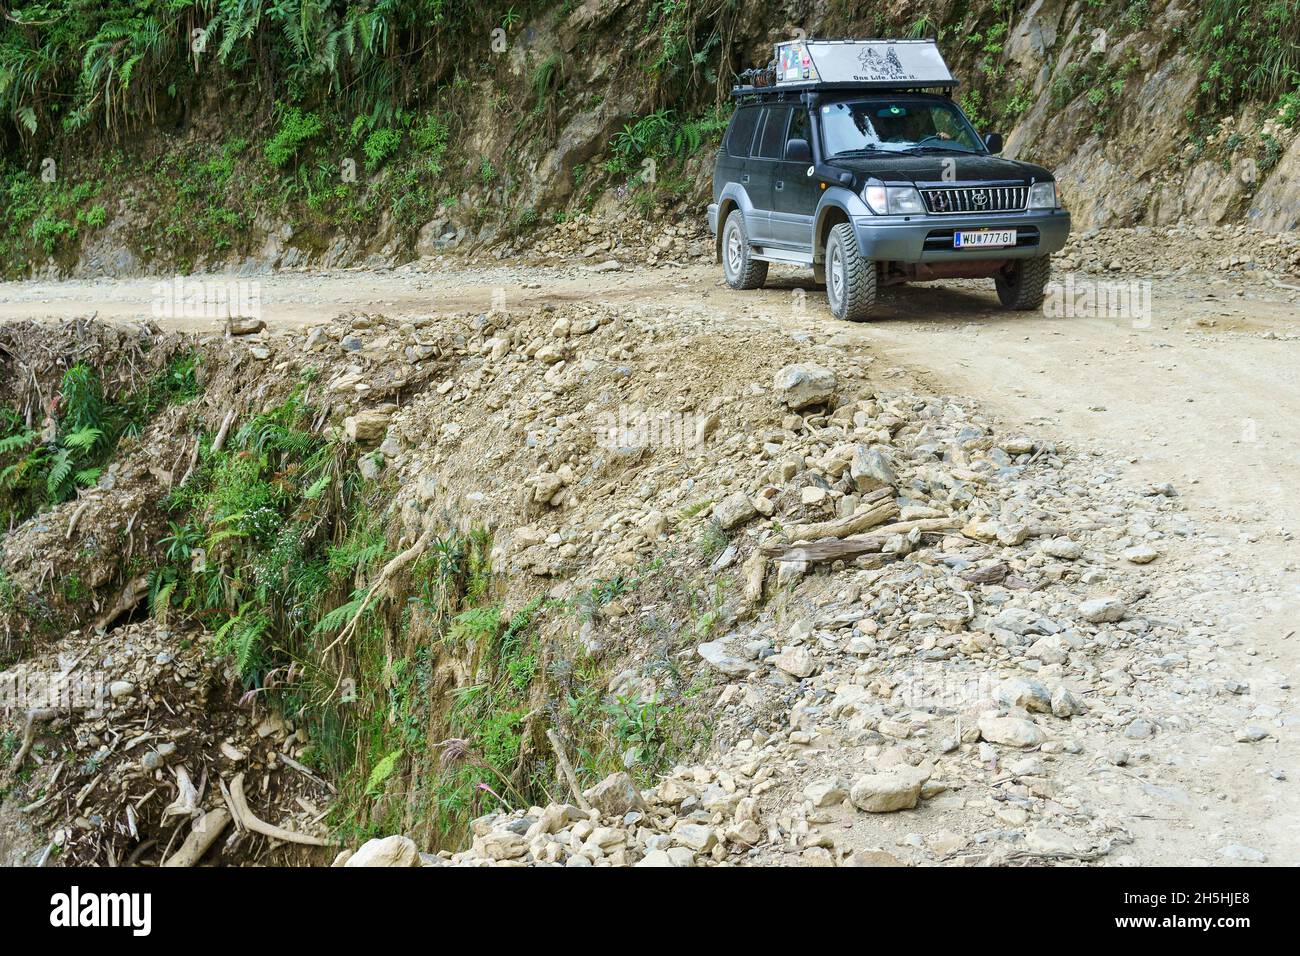 Véhicule tout-terrain, Toyota Land Cruiser, sur la route de la mort, Camino de la Muerte, département de la Paz, Bolivie Banque D'Images